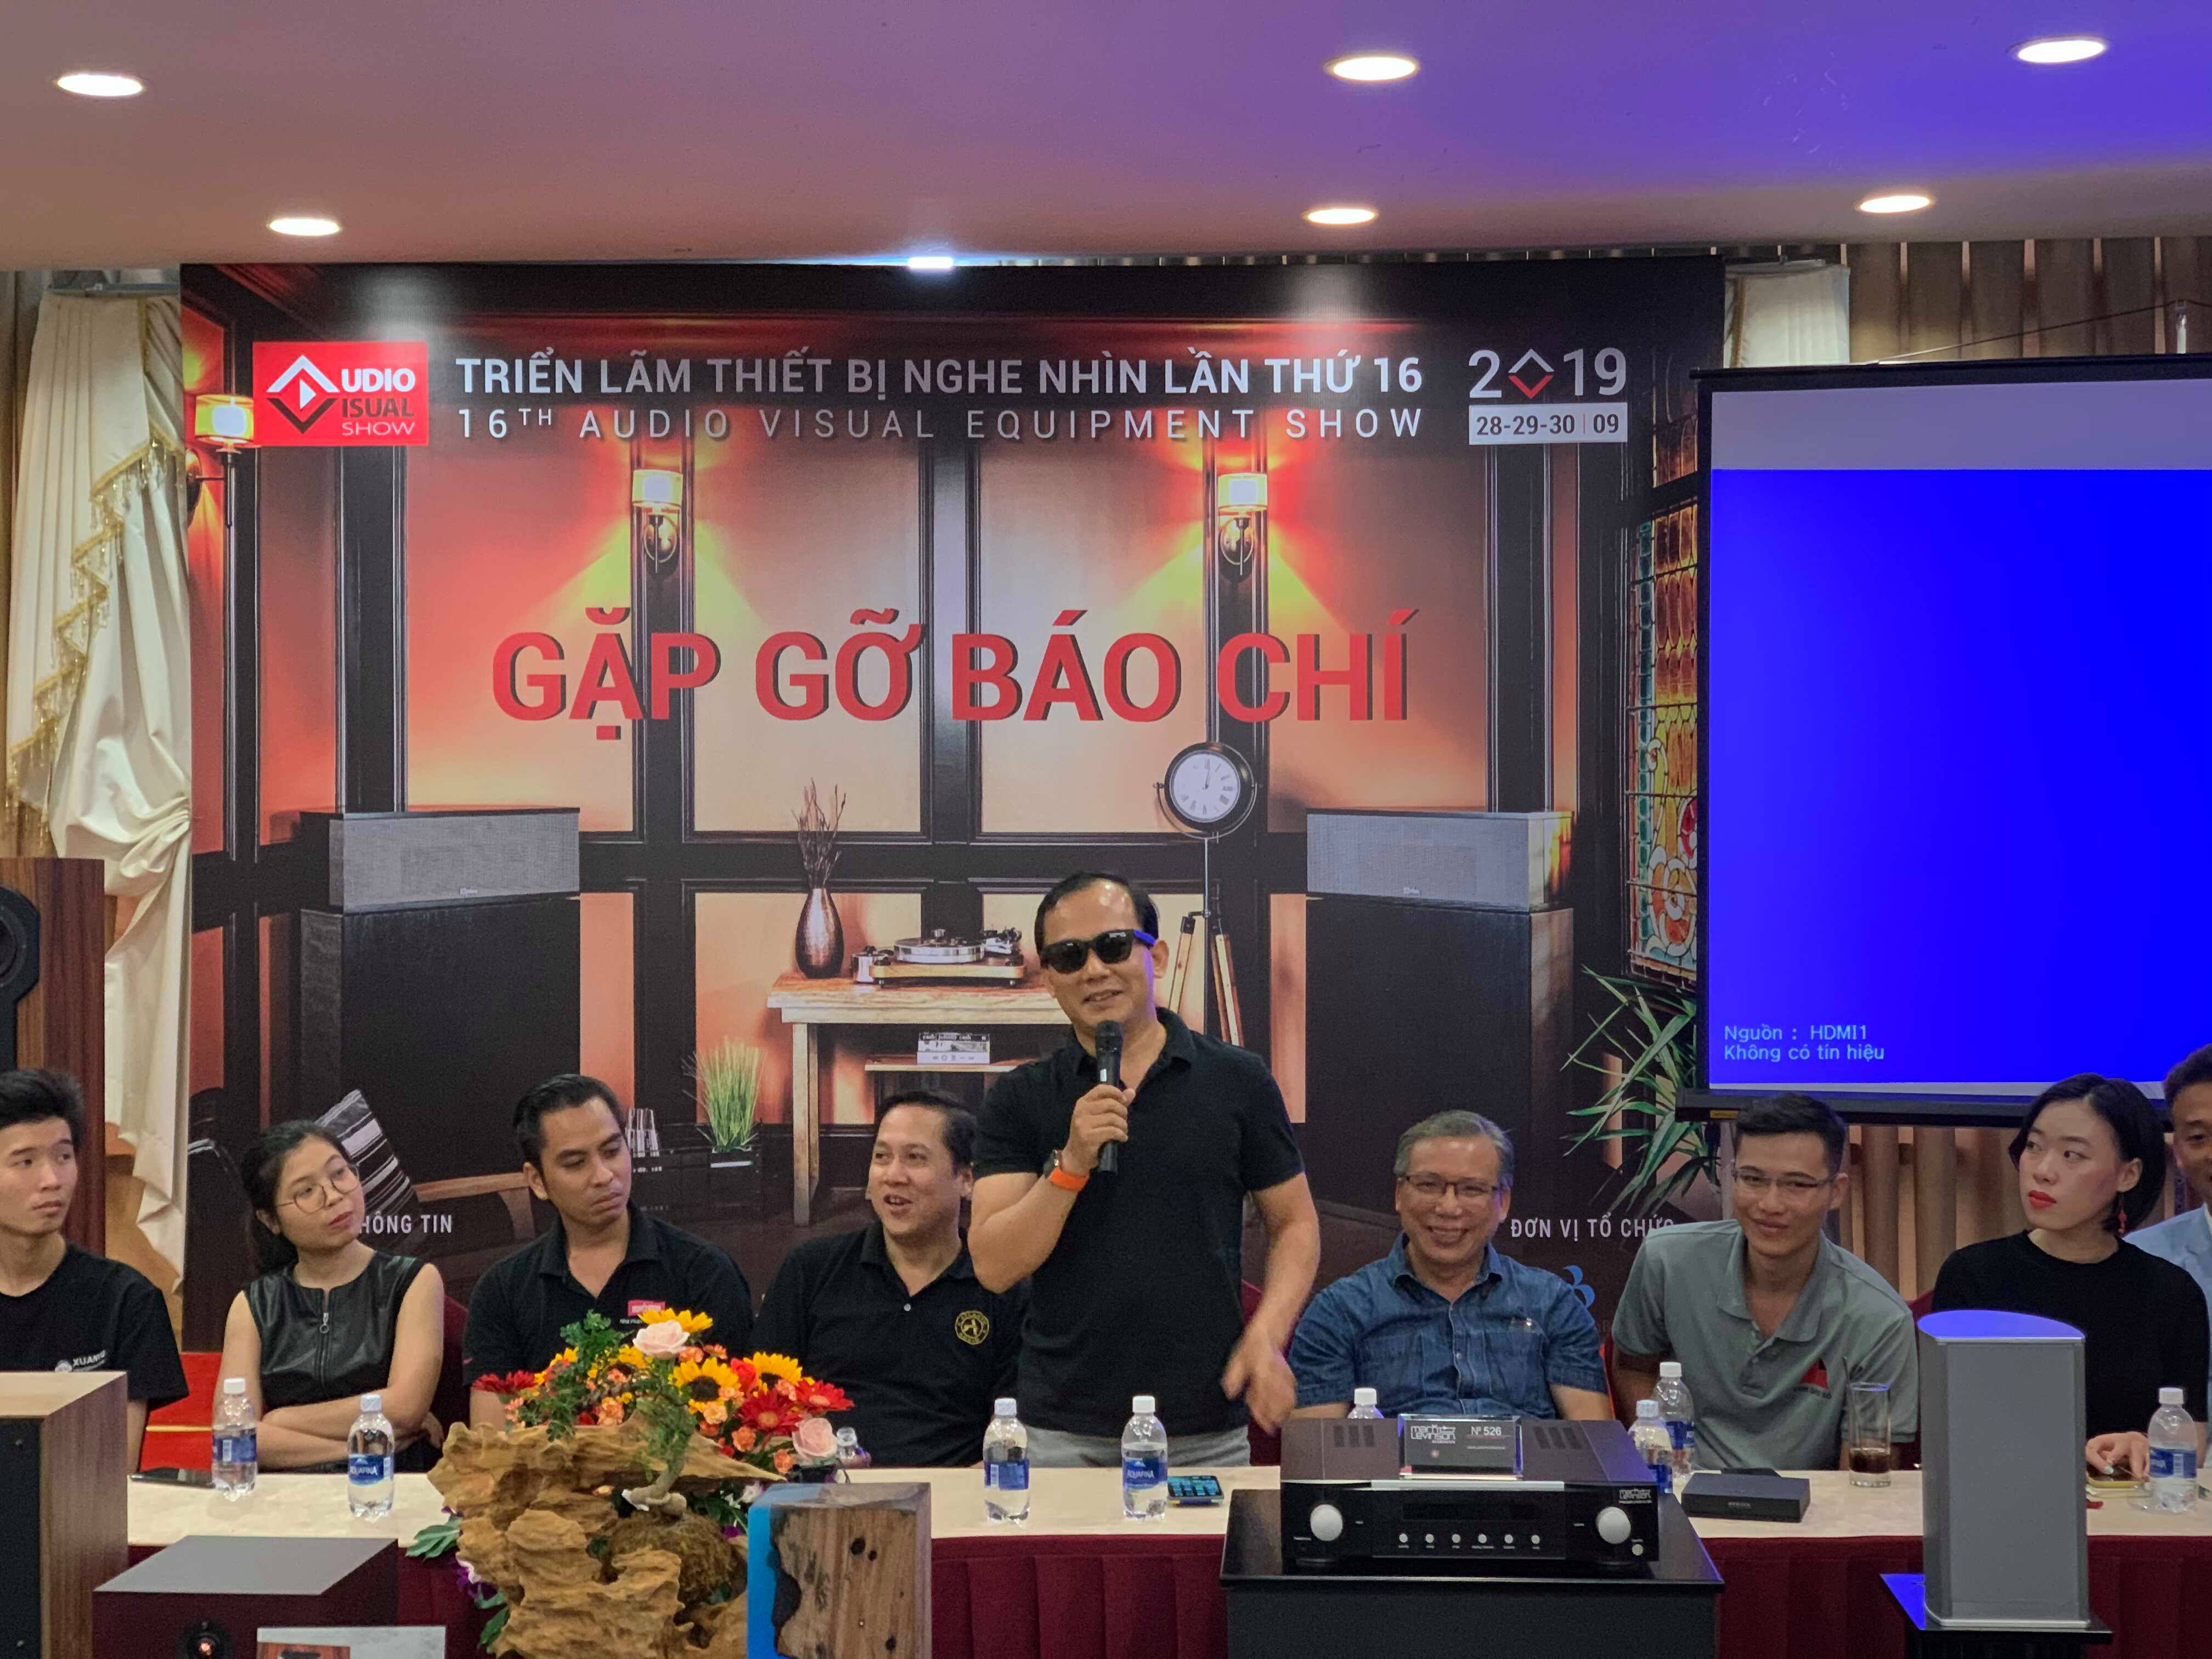 Triển lãm thiết bị nghe nhìn Việt Nam lần thứ 16 - AV Show sẽ diễn ra trong 3 ngày 28-29-30/9/2019